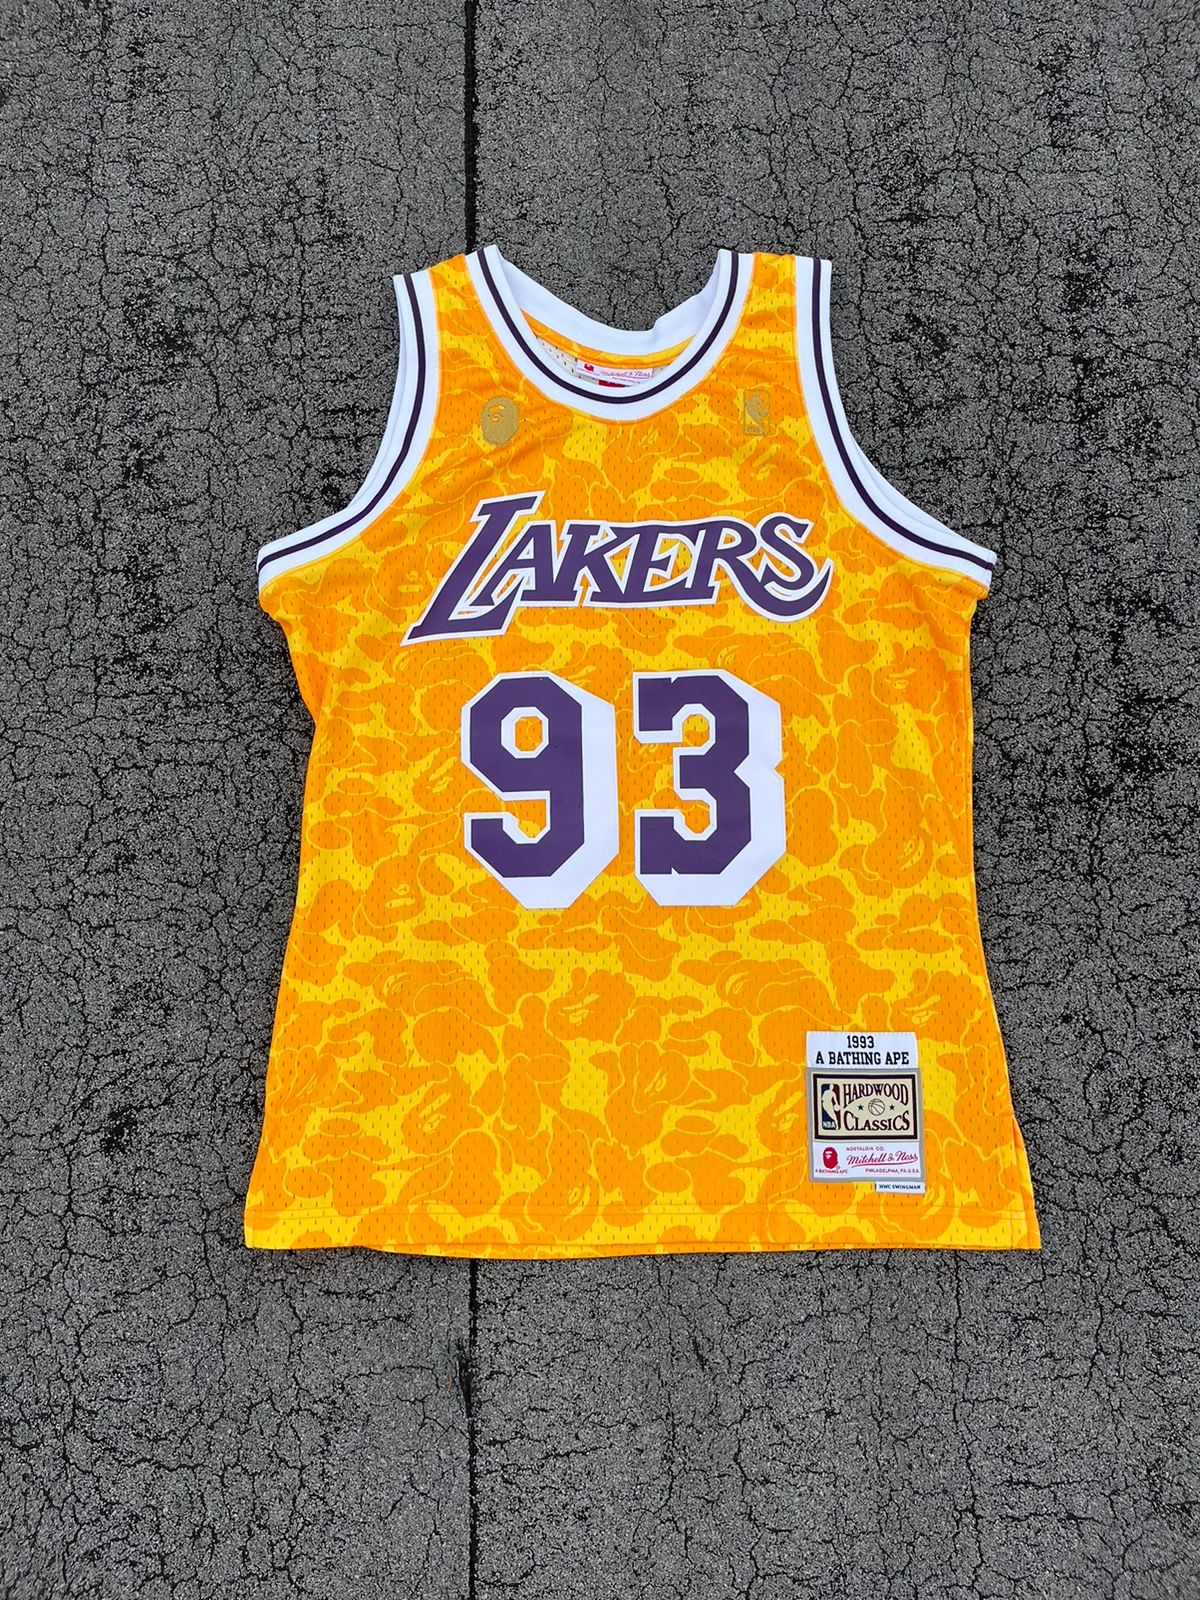 Bape Bape x Mitchell & Ness Lakers Swingman Jersey | Grailed